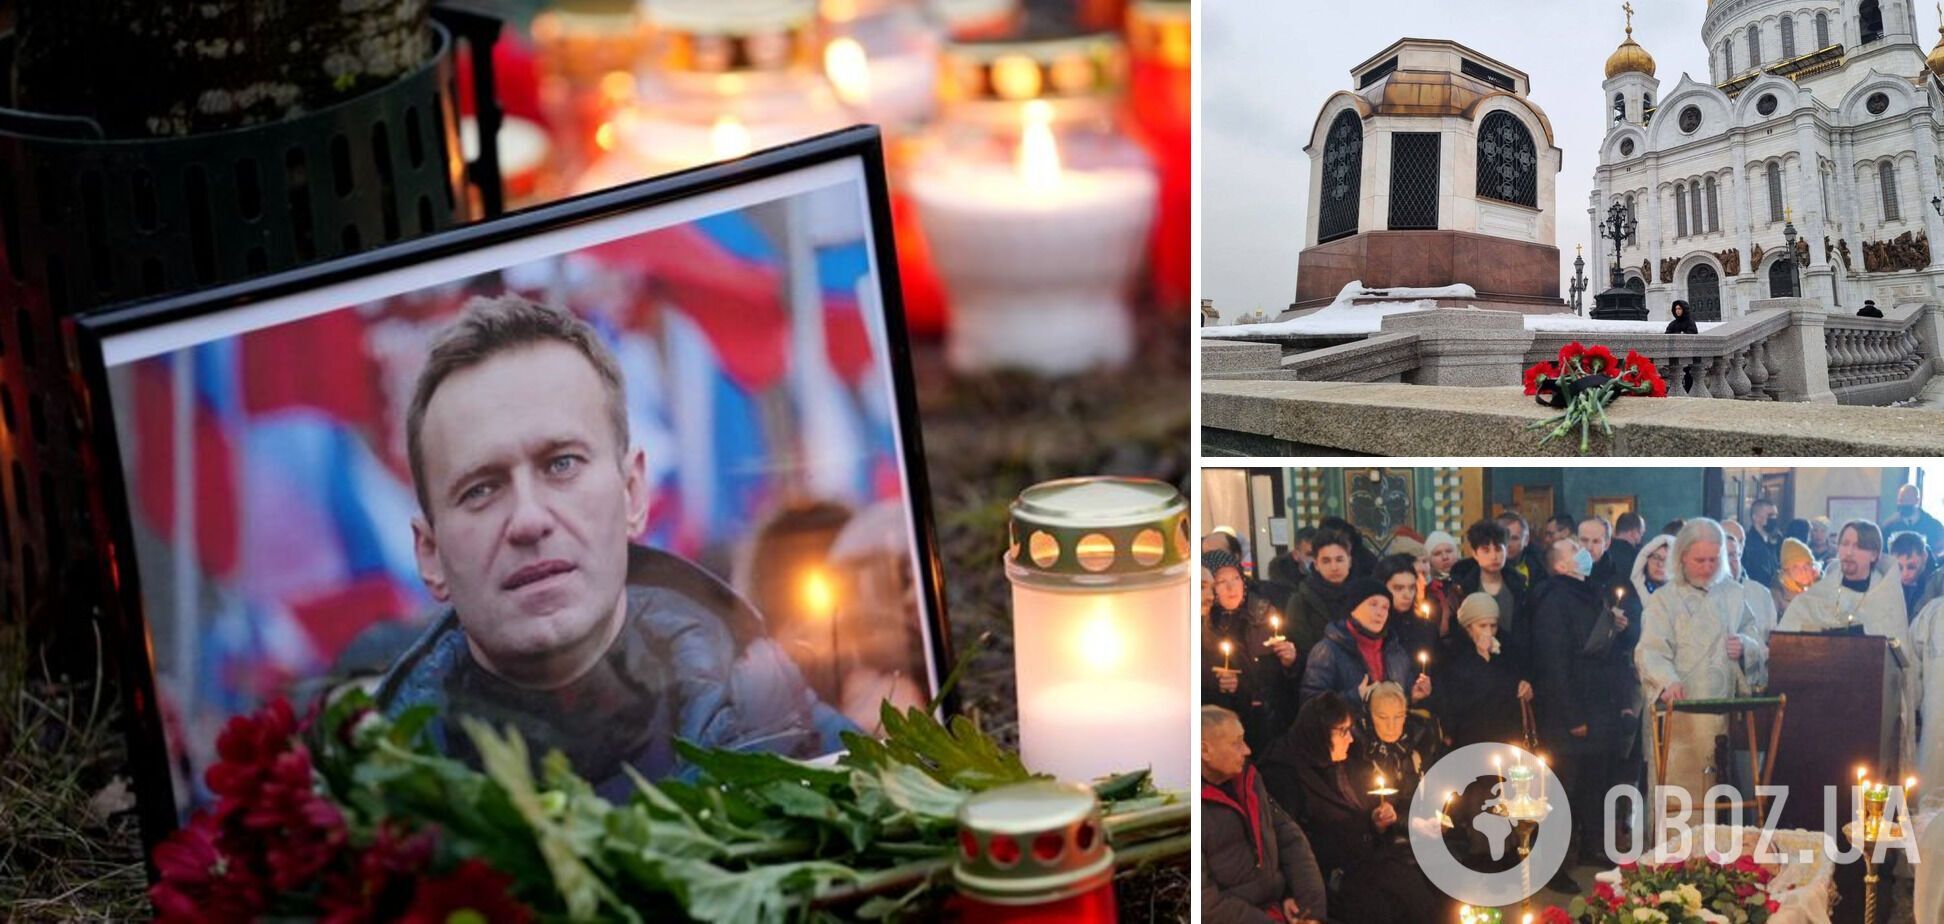 На крышах засели снайперы: гроб с Навальным заносили в храм под 'прицелом' путинских силовиков. Фото и видео